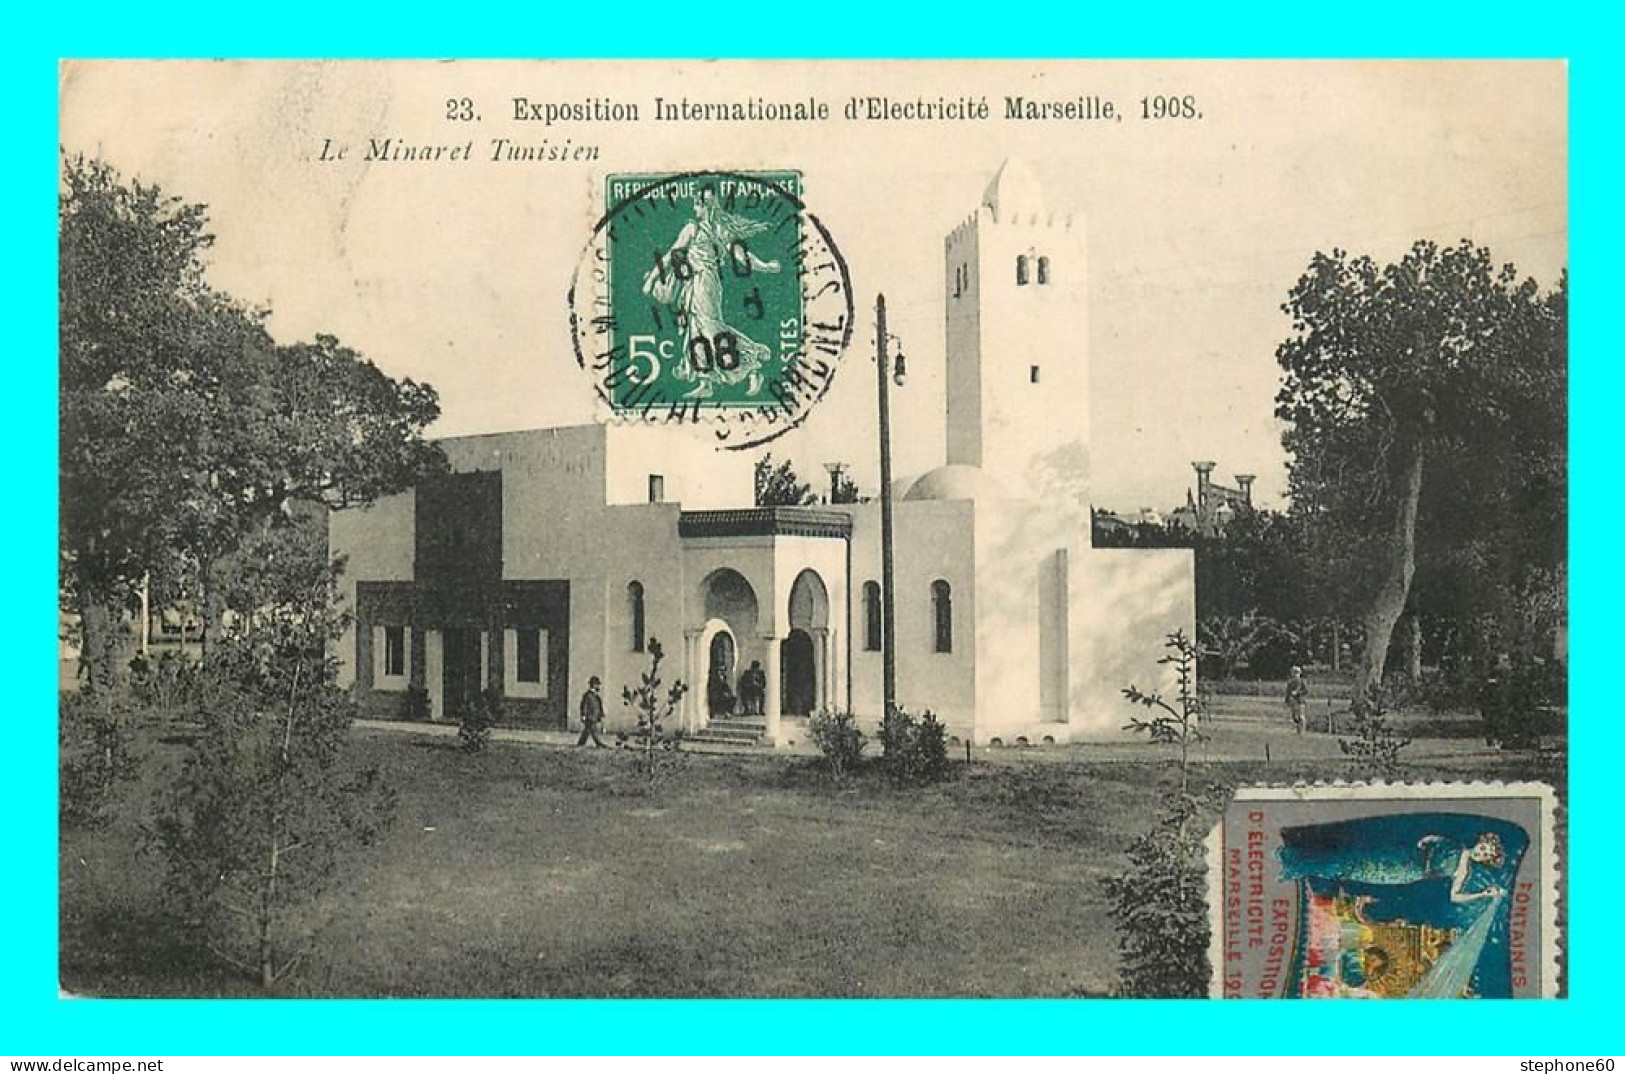 A881 / 249 13 - MARSEILLE Exposition Internationale D'Electricité 1908 Minaret Tunisien - Colonial Exhibitions 1906 - 1922